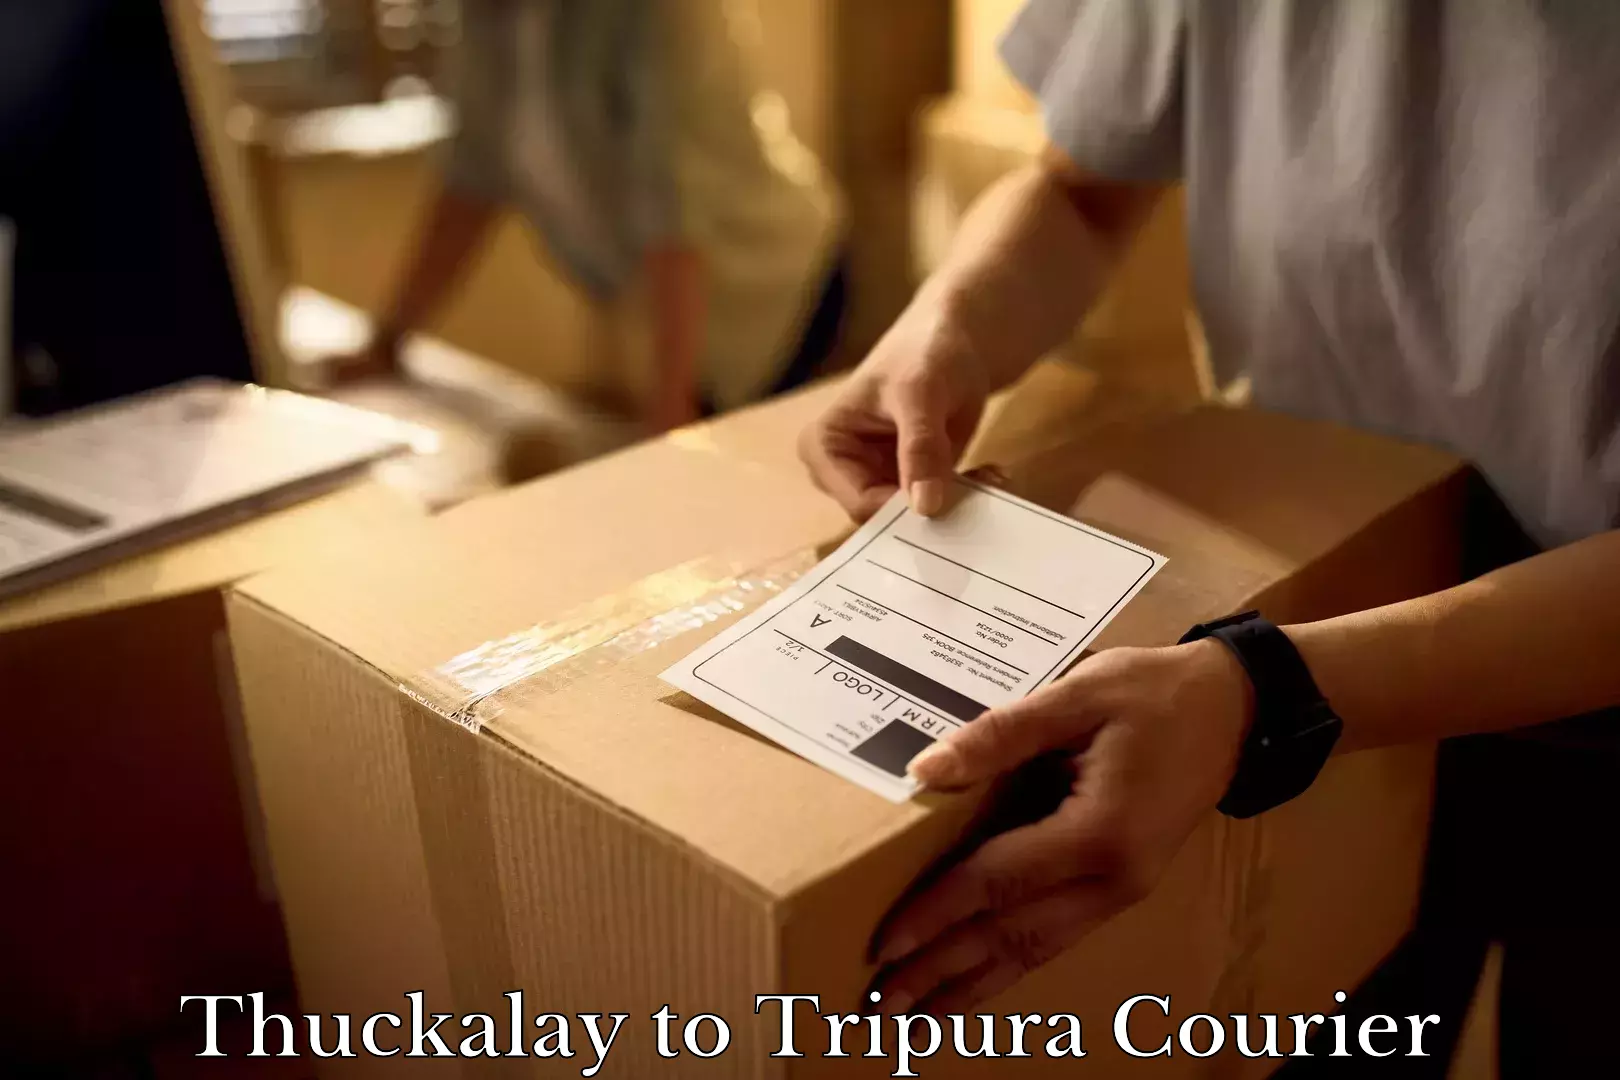 Quality moving company Thuckalay to Tripura